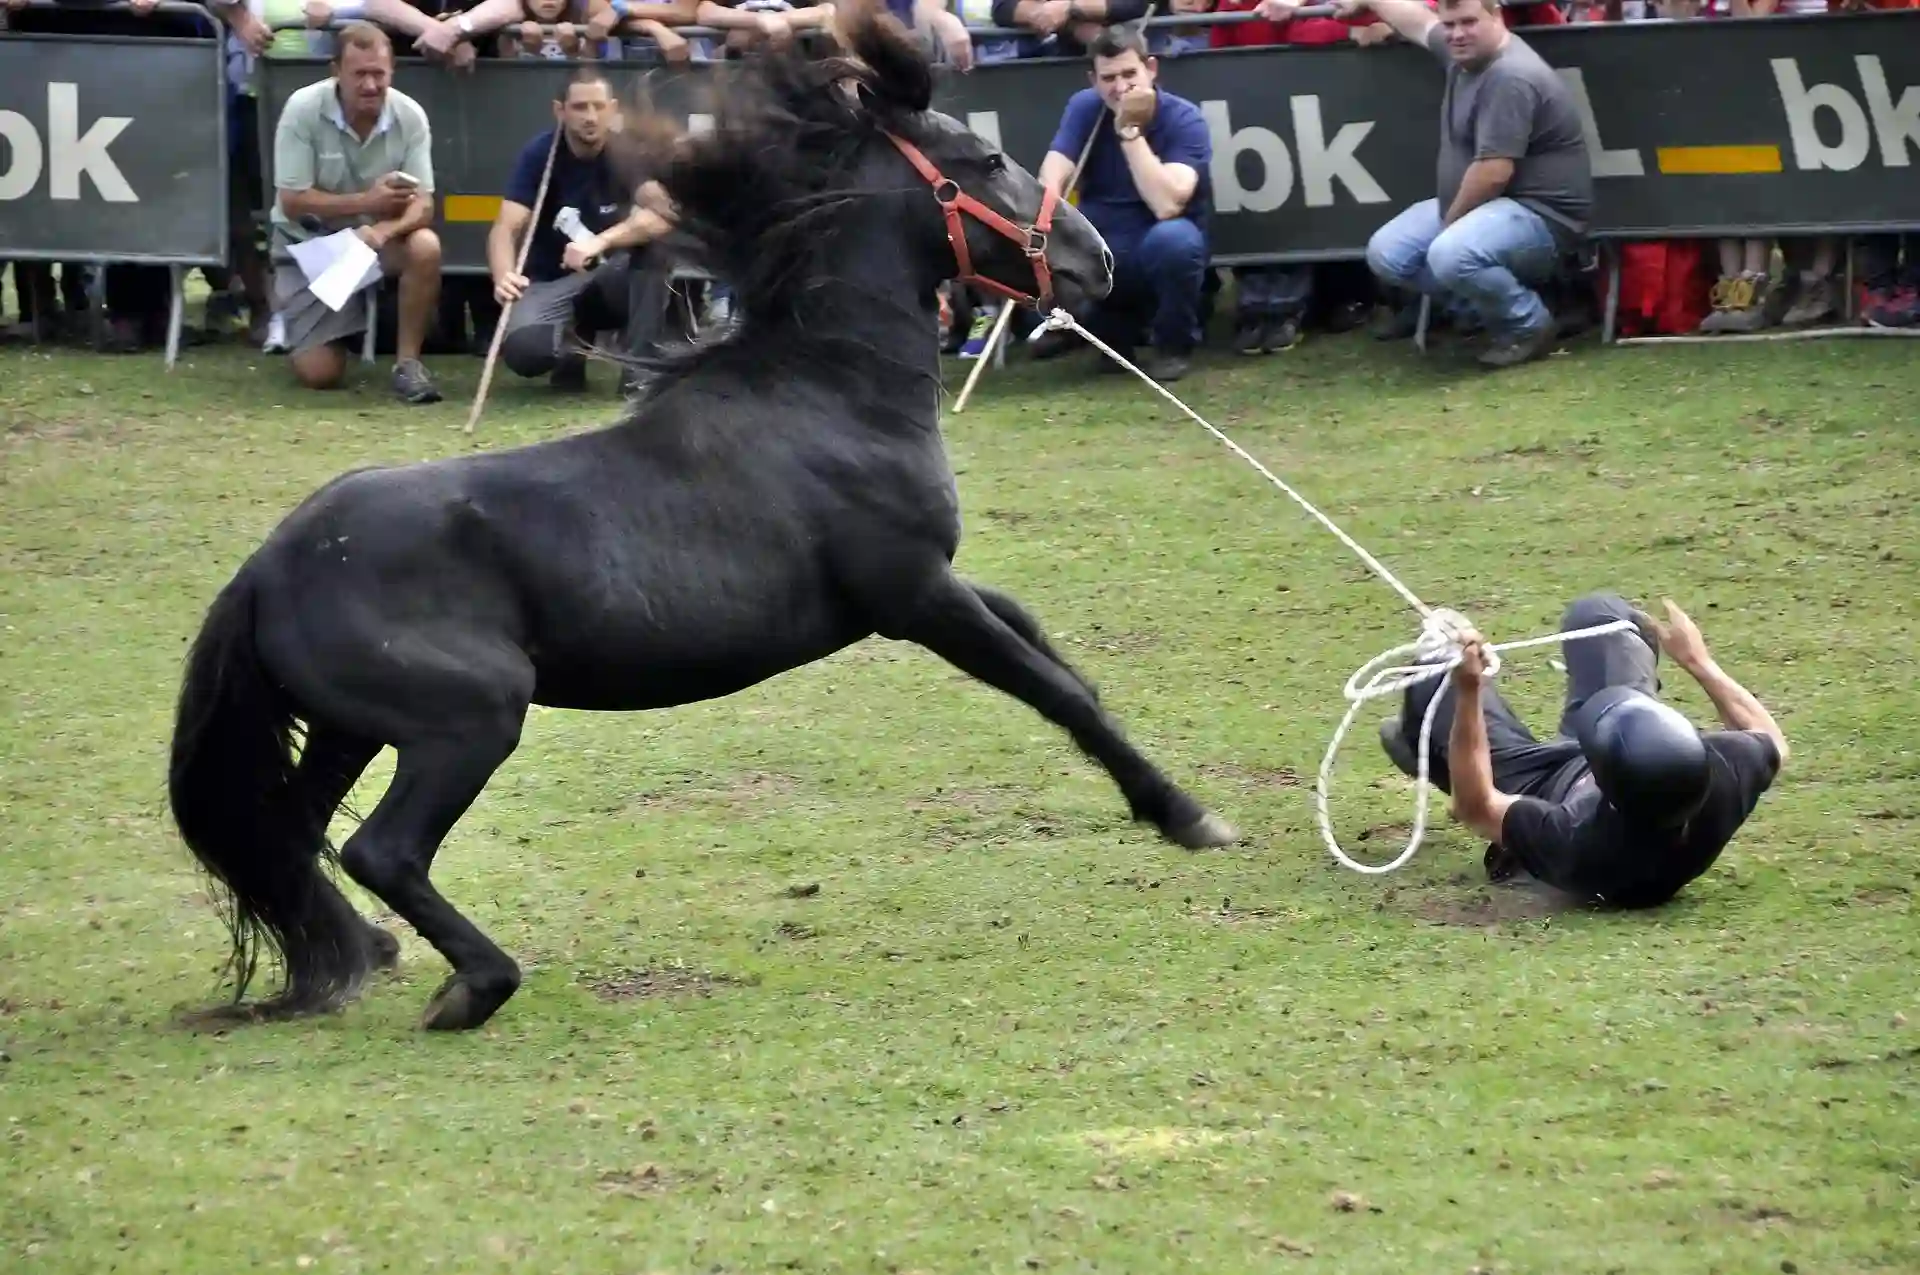 "Crueldad" en la Fiesta del Asturcón por el "trato inapropiado" a los animales / Foto: PACMA